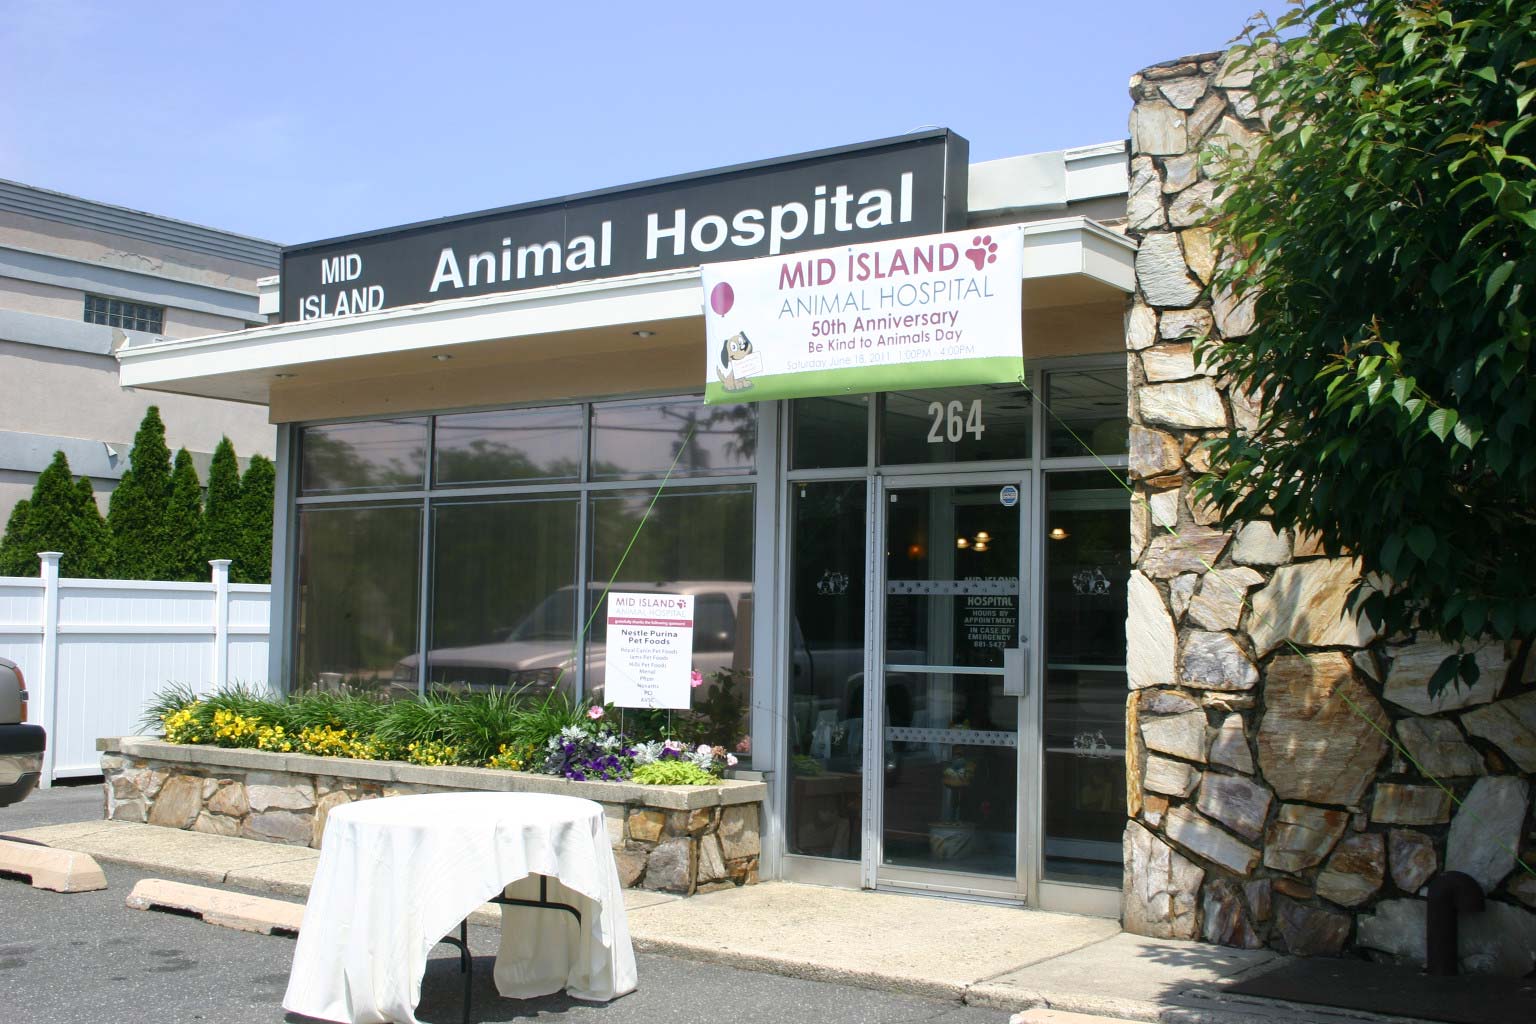 Mid Island Animal Hospital Building